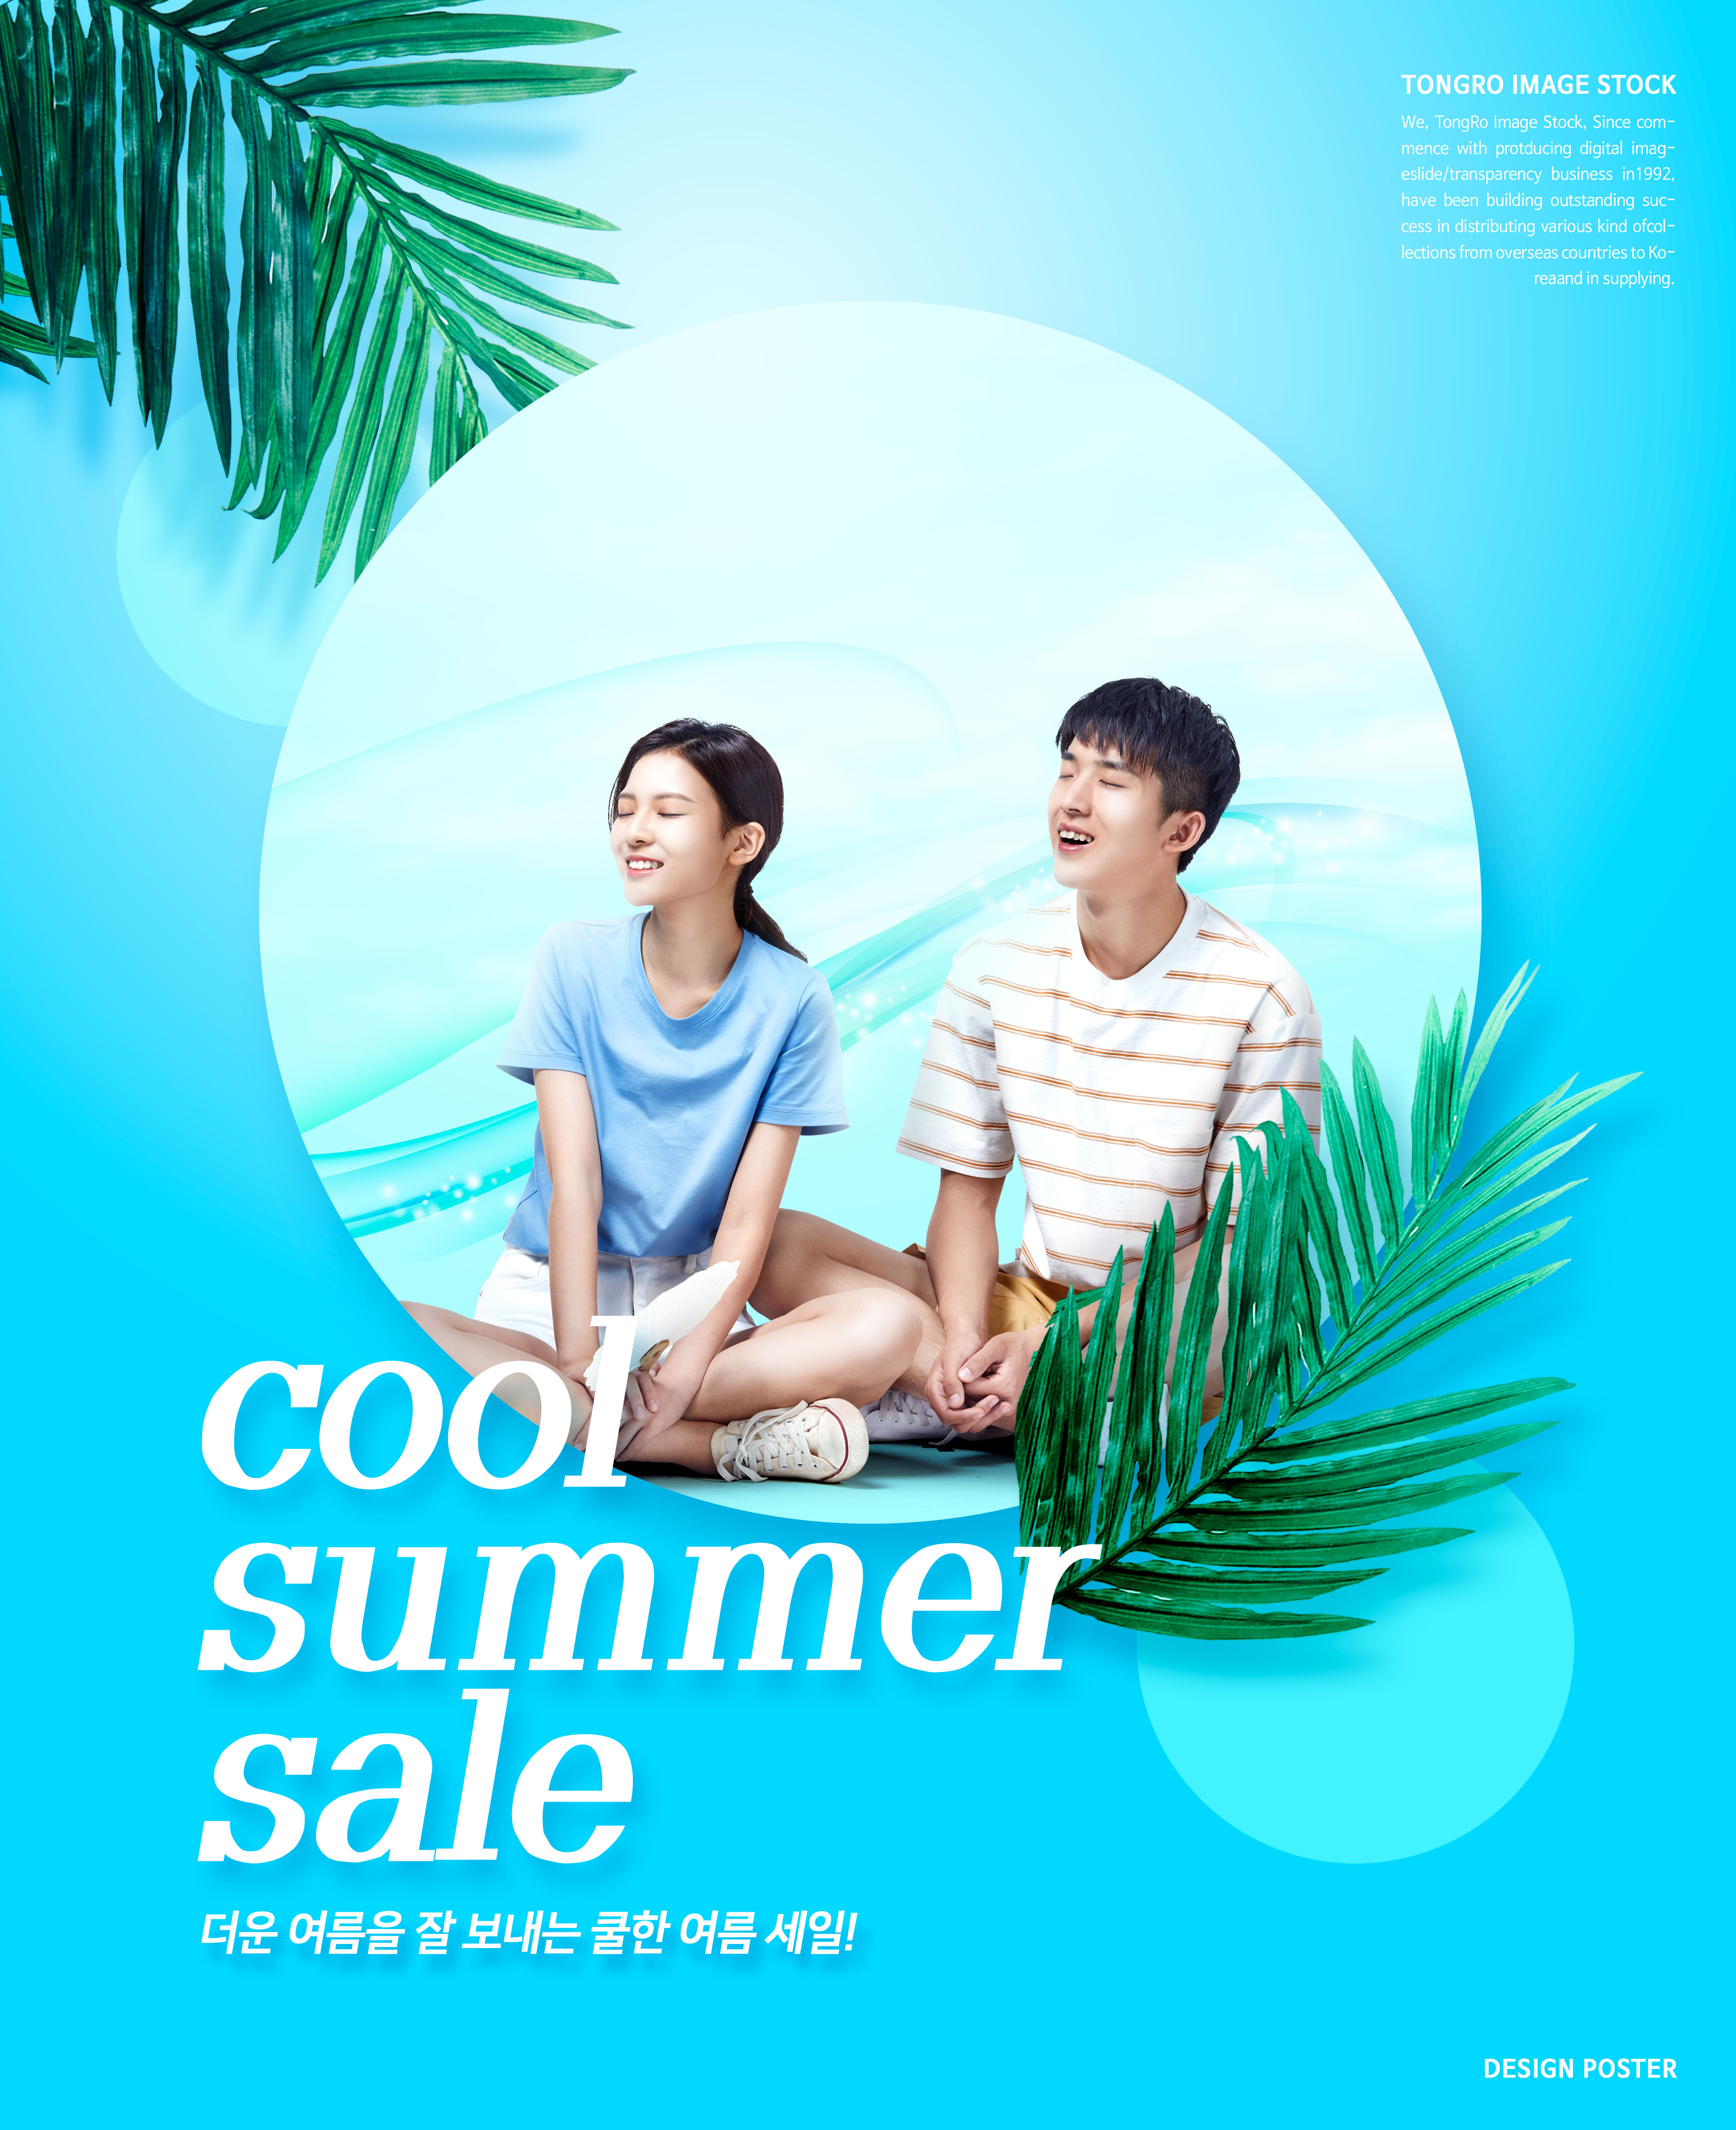 夏季酷暑清凉主题广告海报设计模板插图